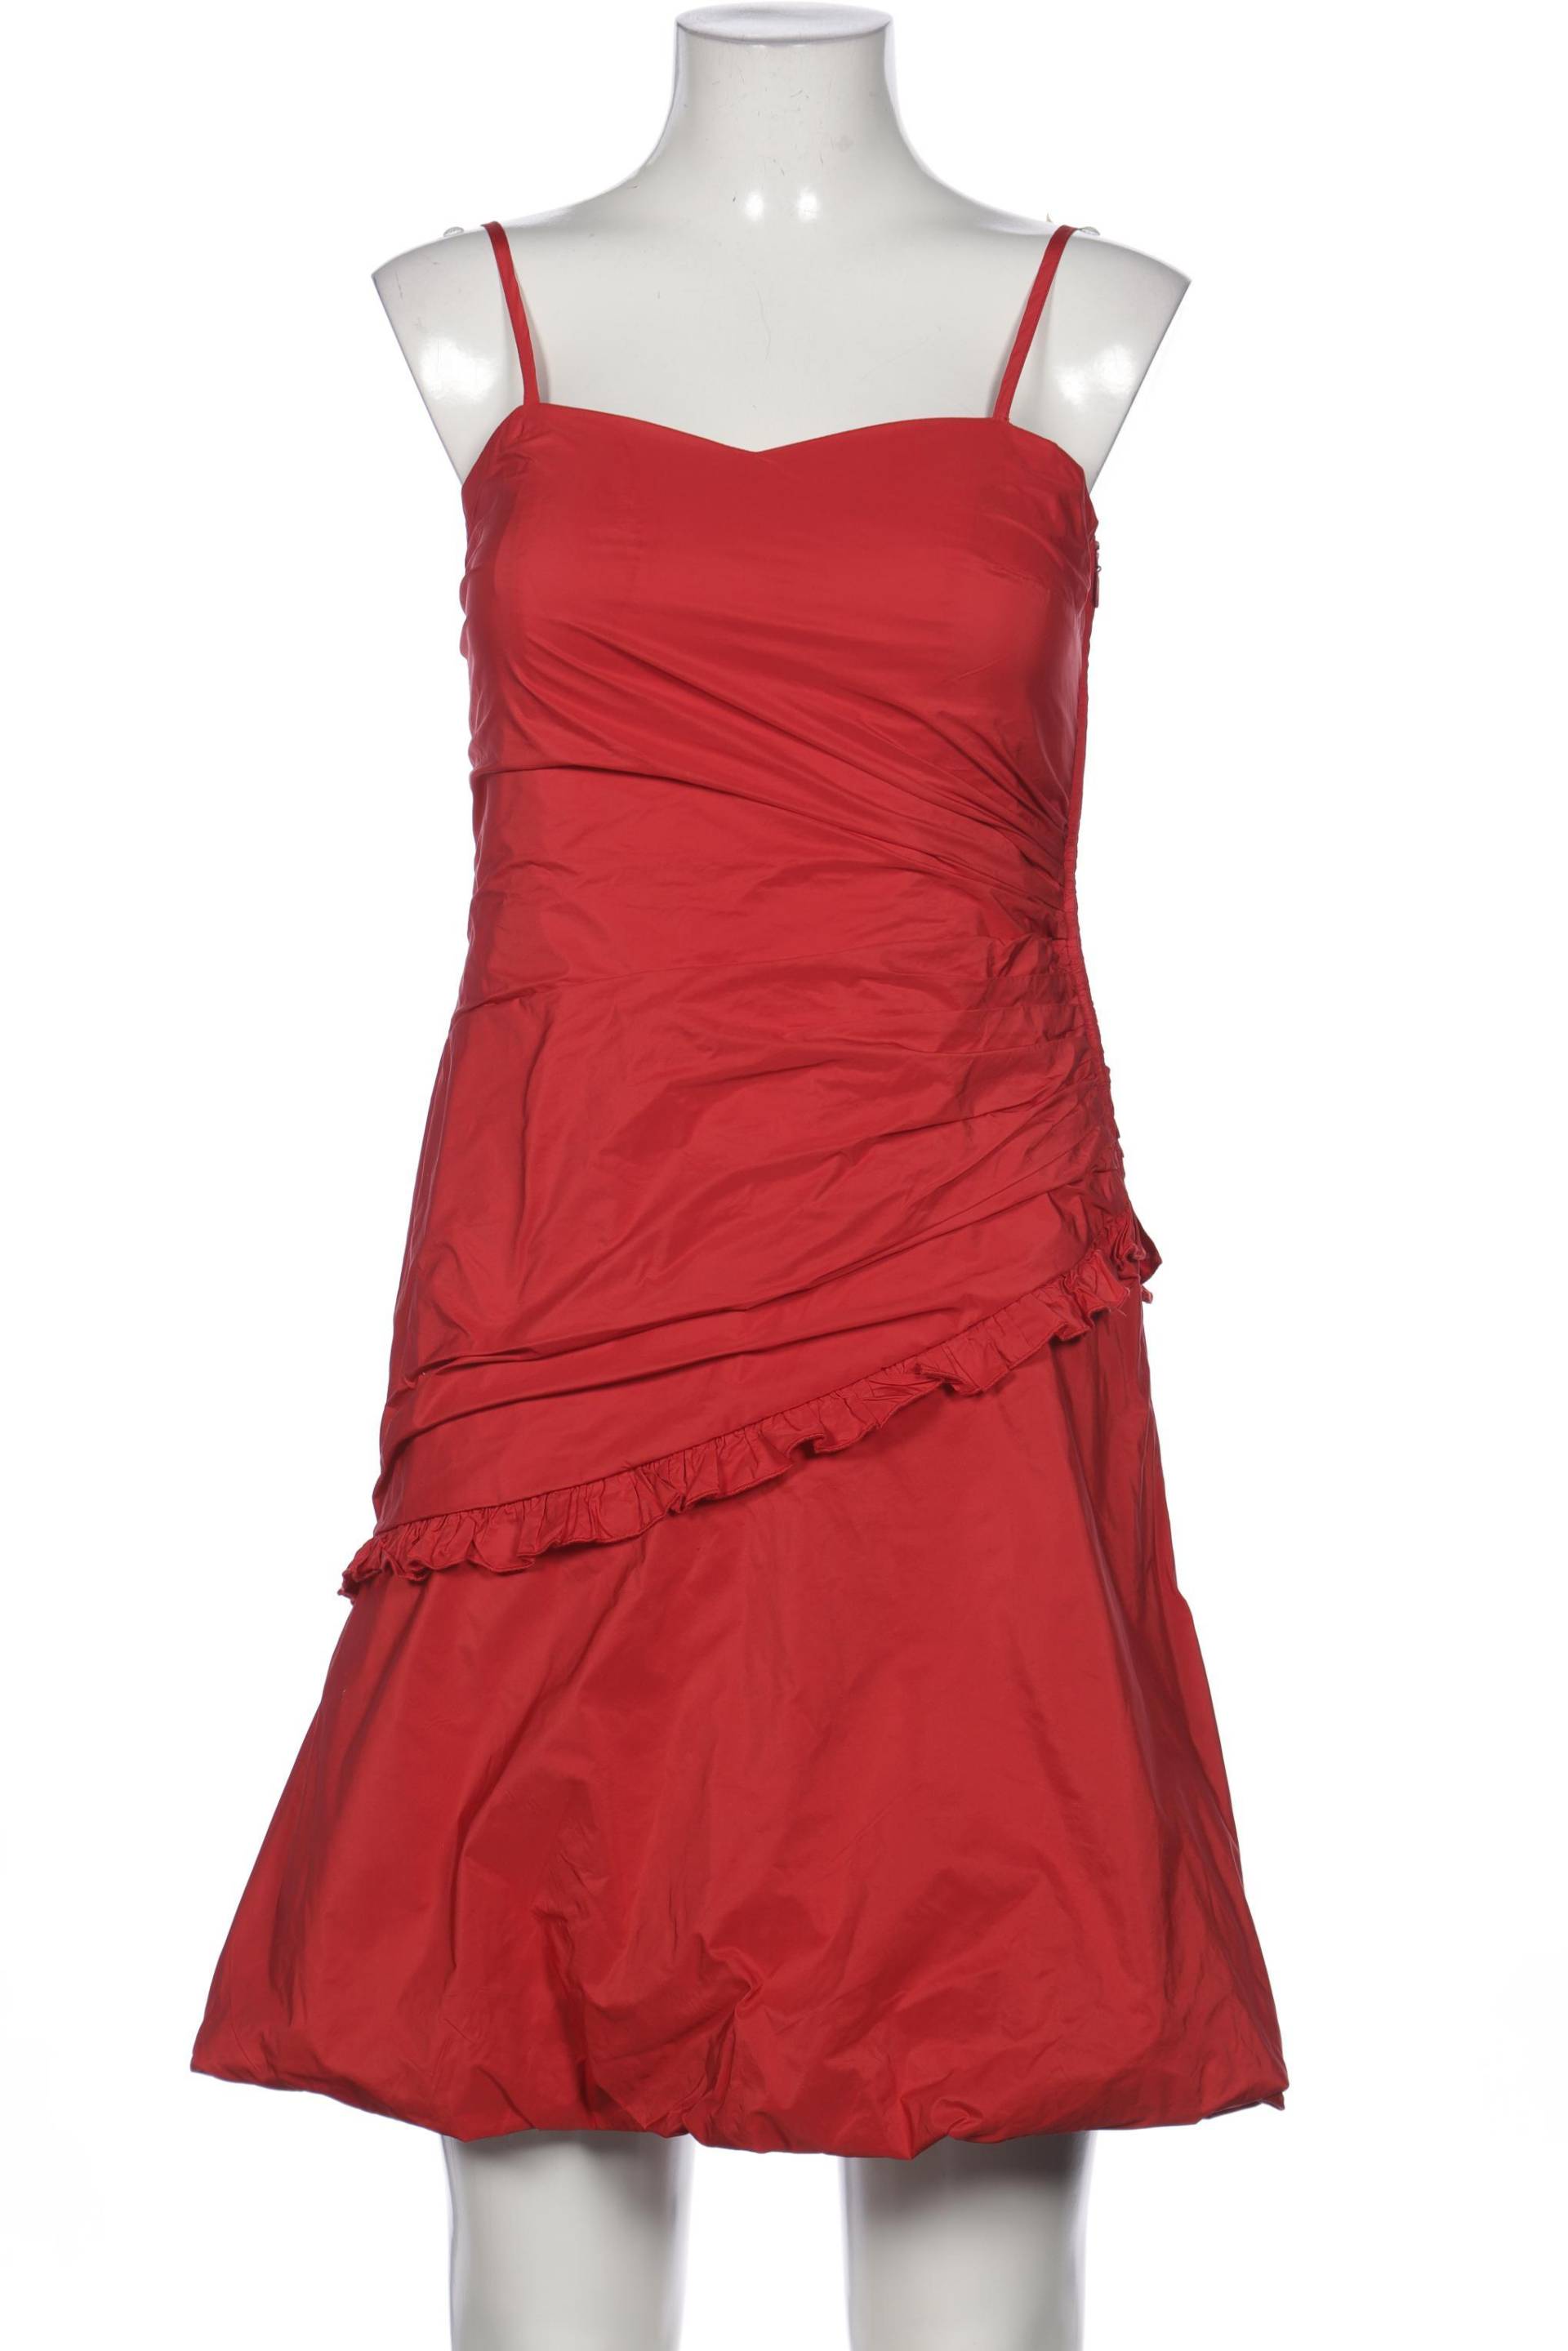 Vera Mont Damen Kleid, rot, Gr. 38 von Vera Mont